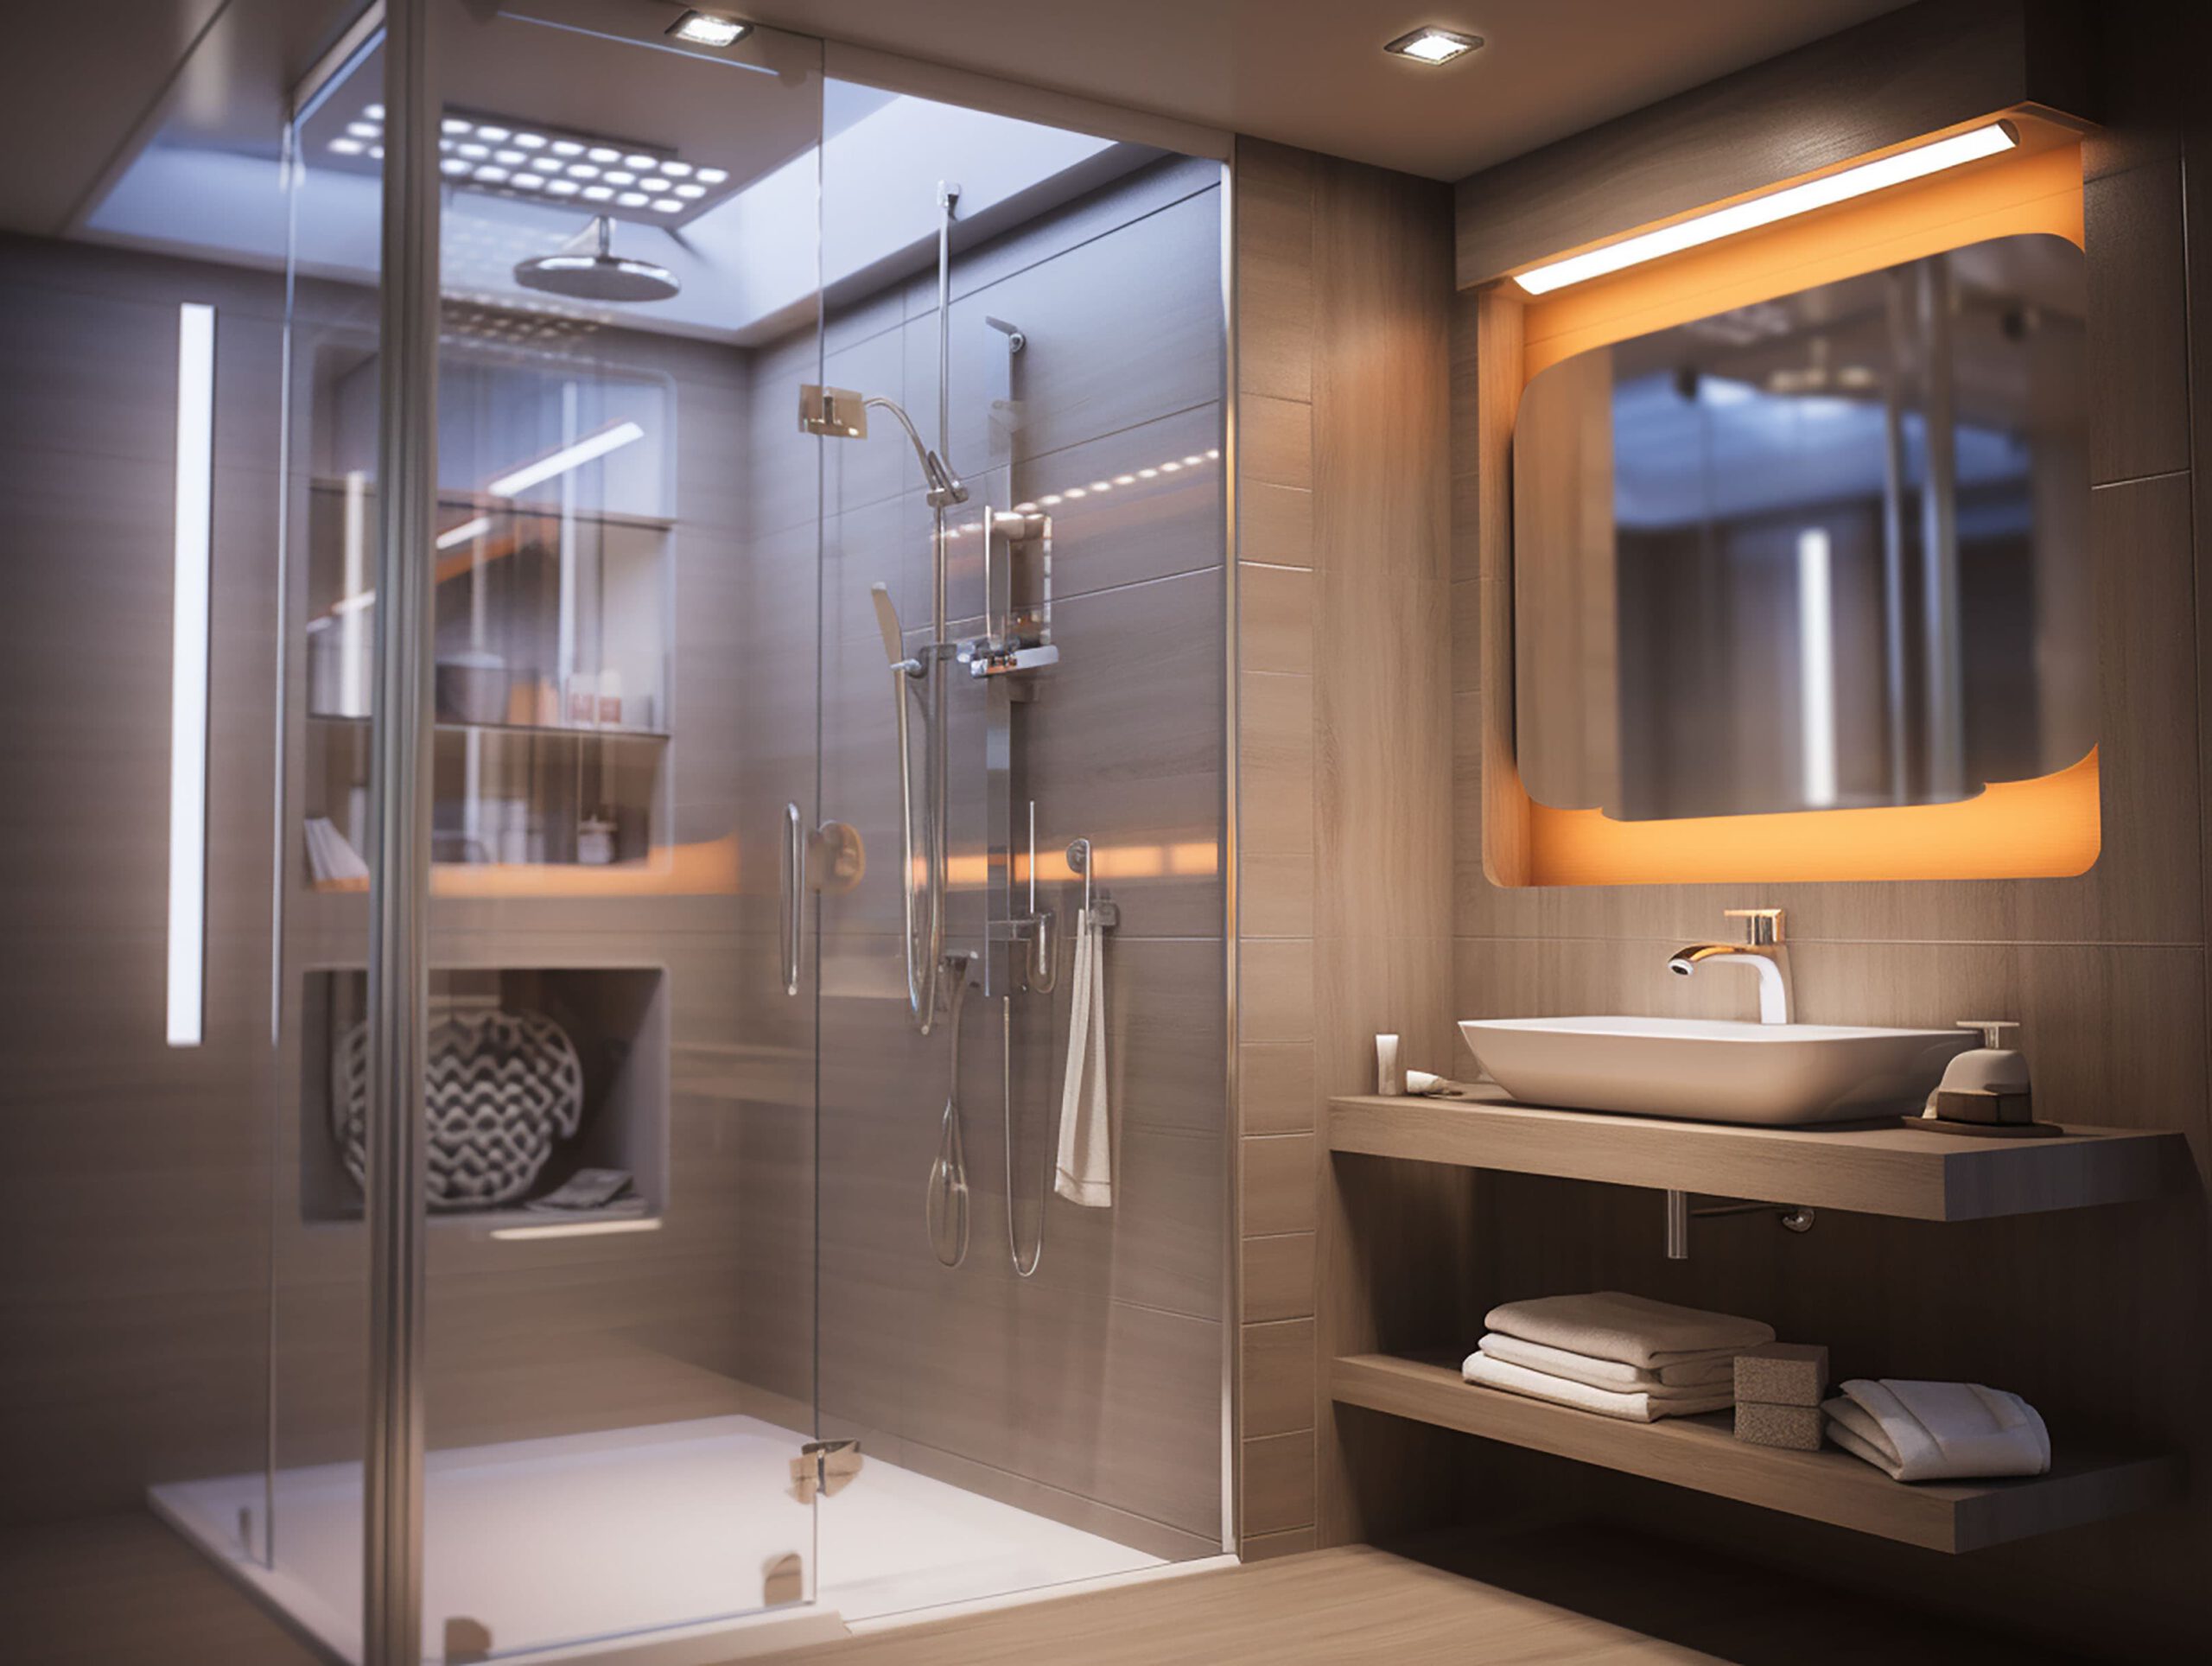 Mejorando tu sala de baño instalando platos de ducha innovadores